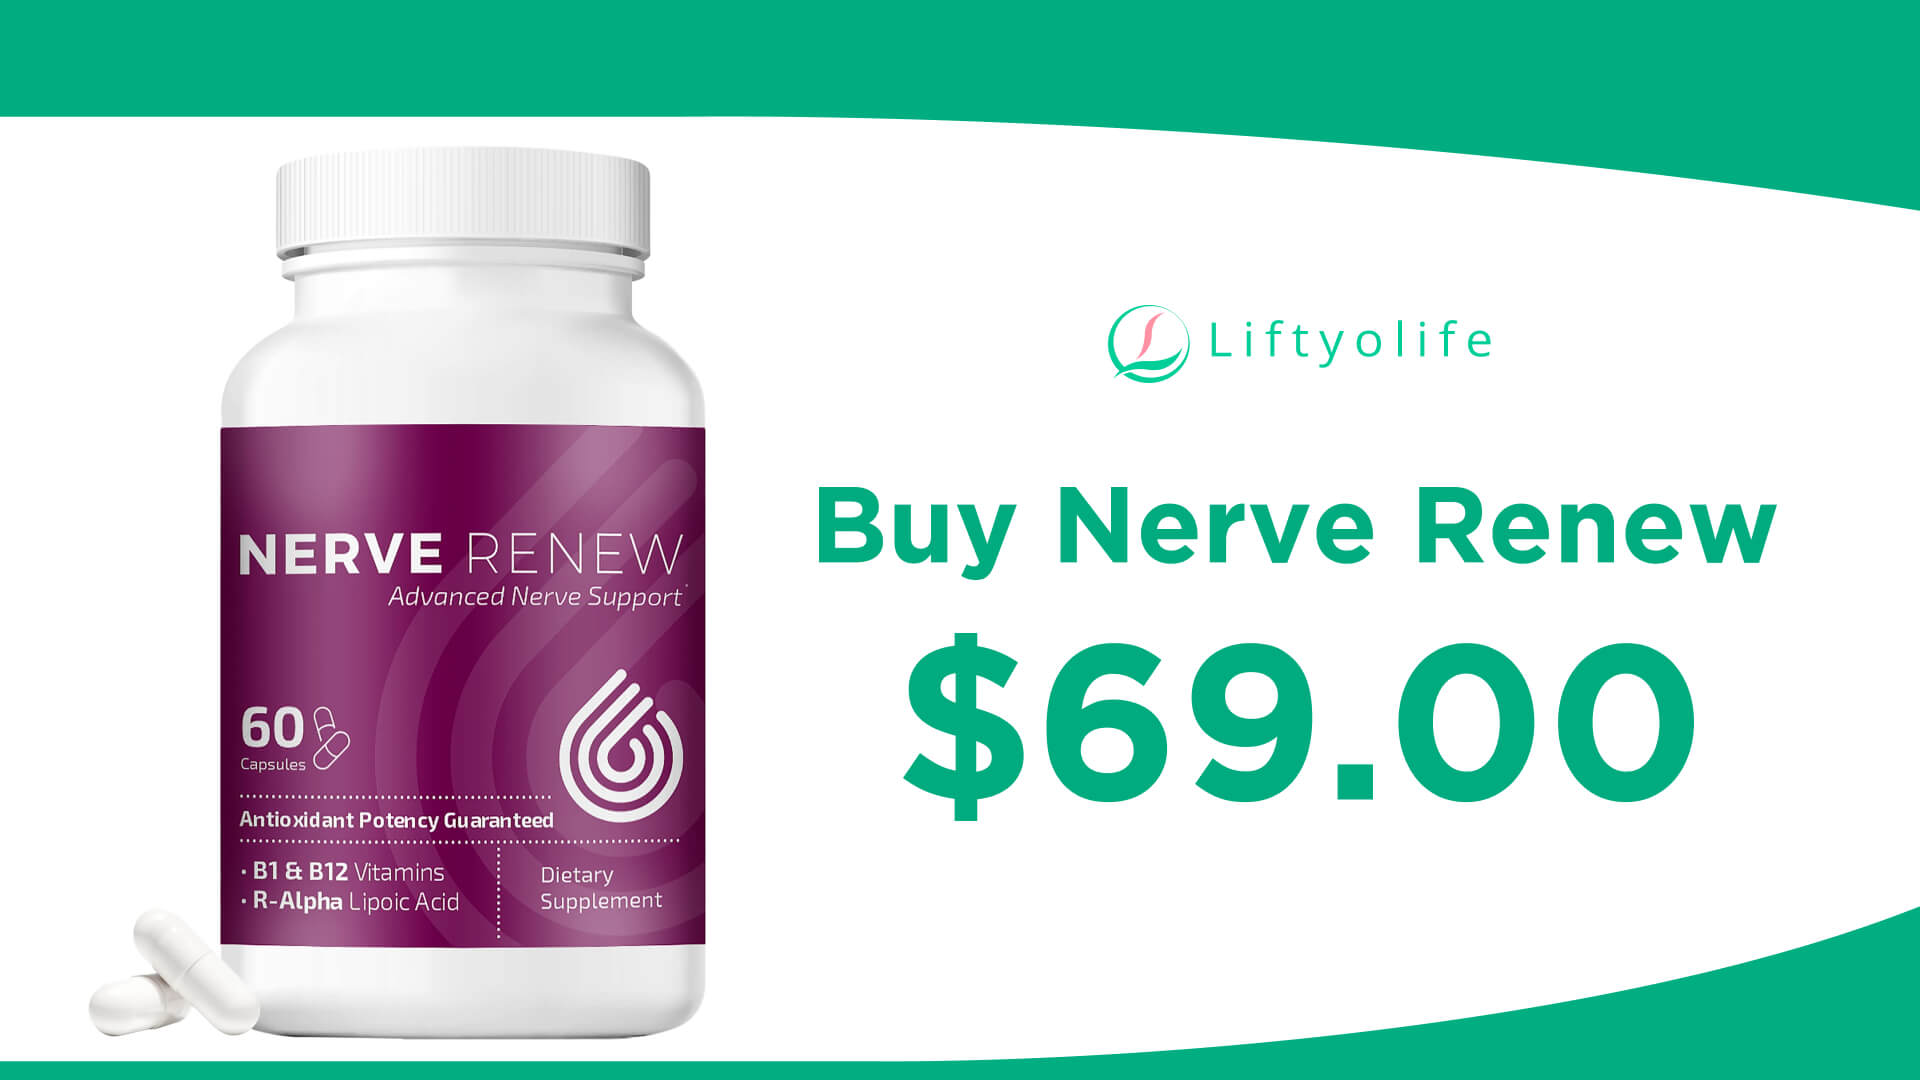 Where To Buy Nerve Renew?